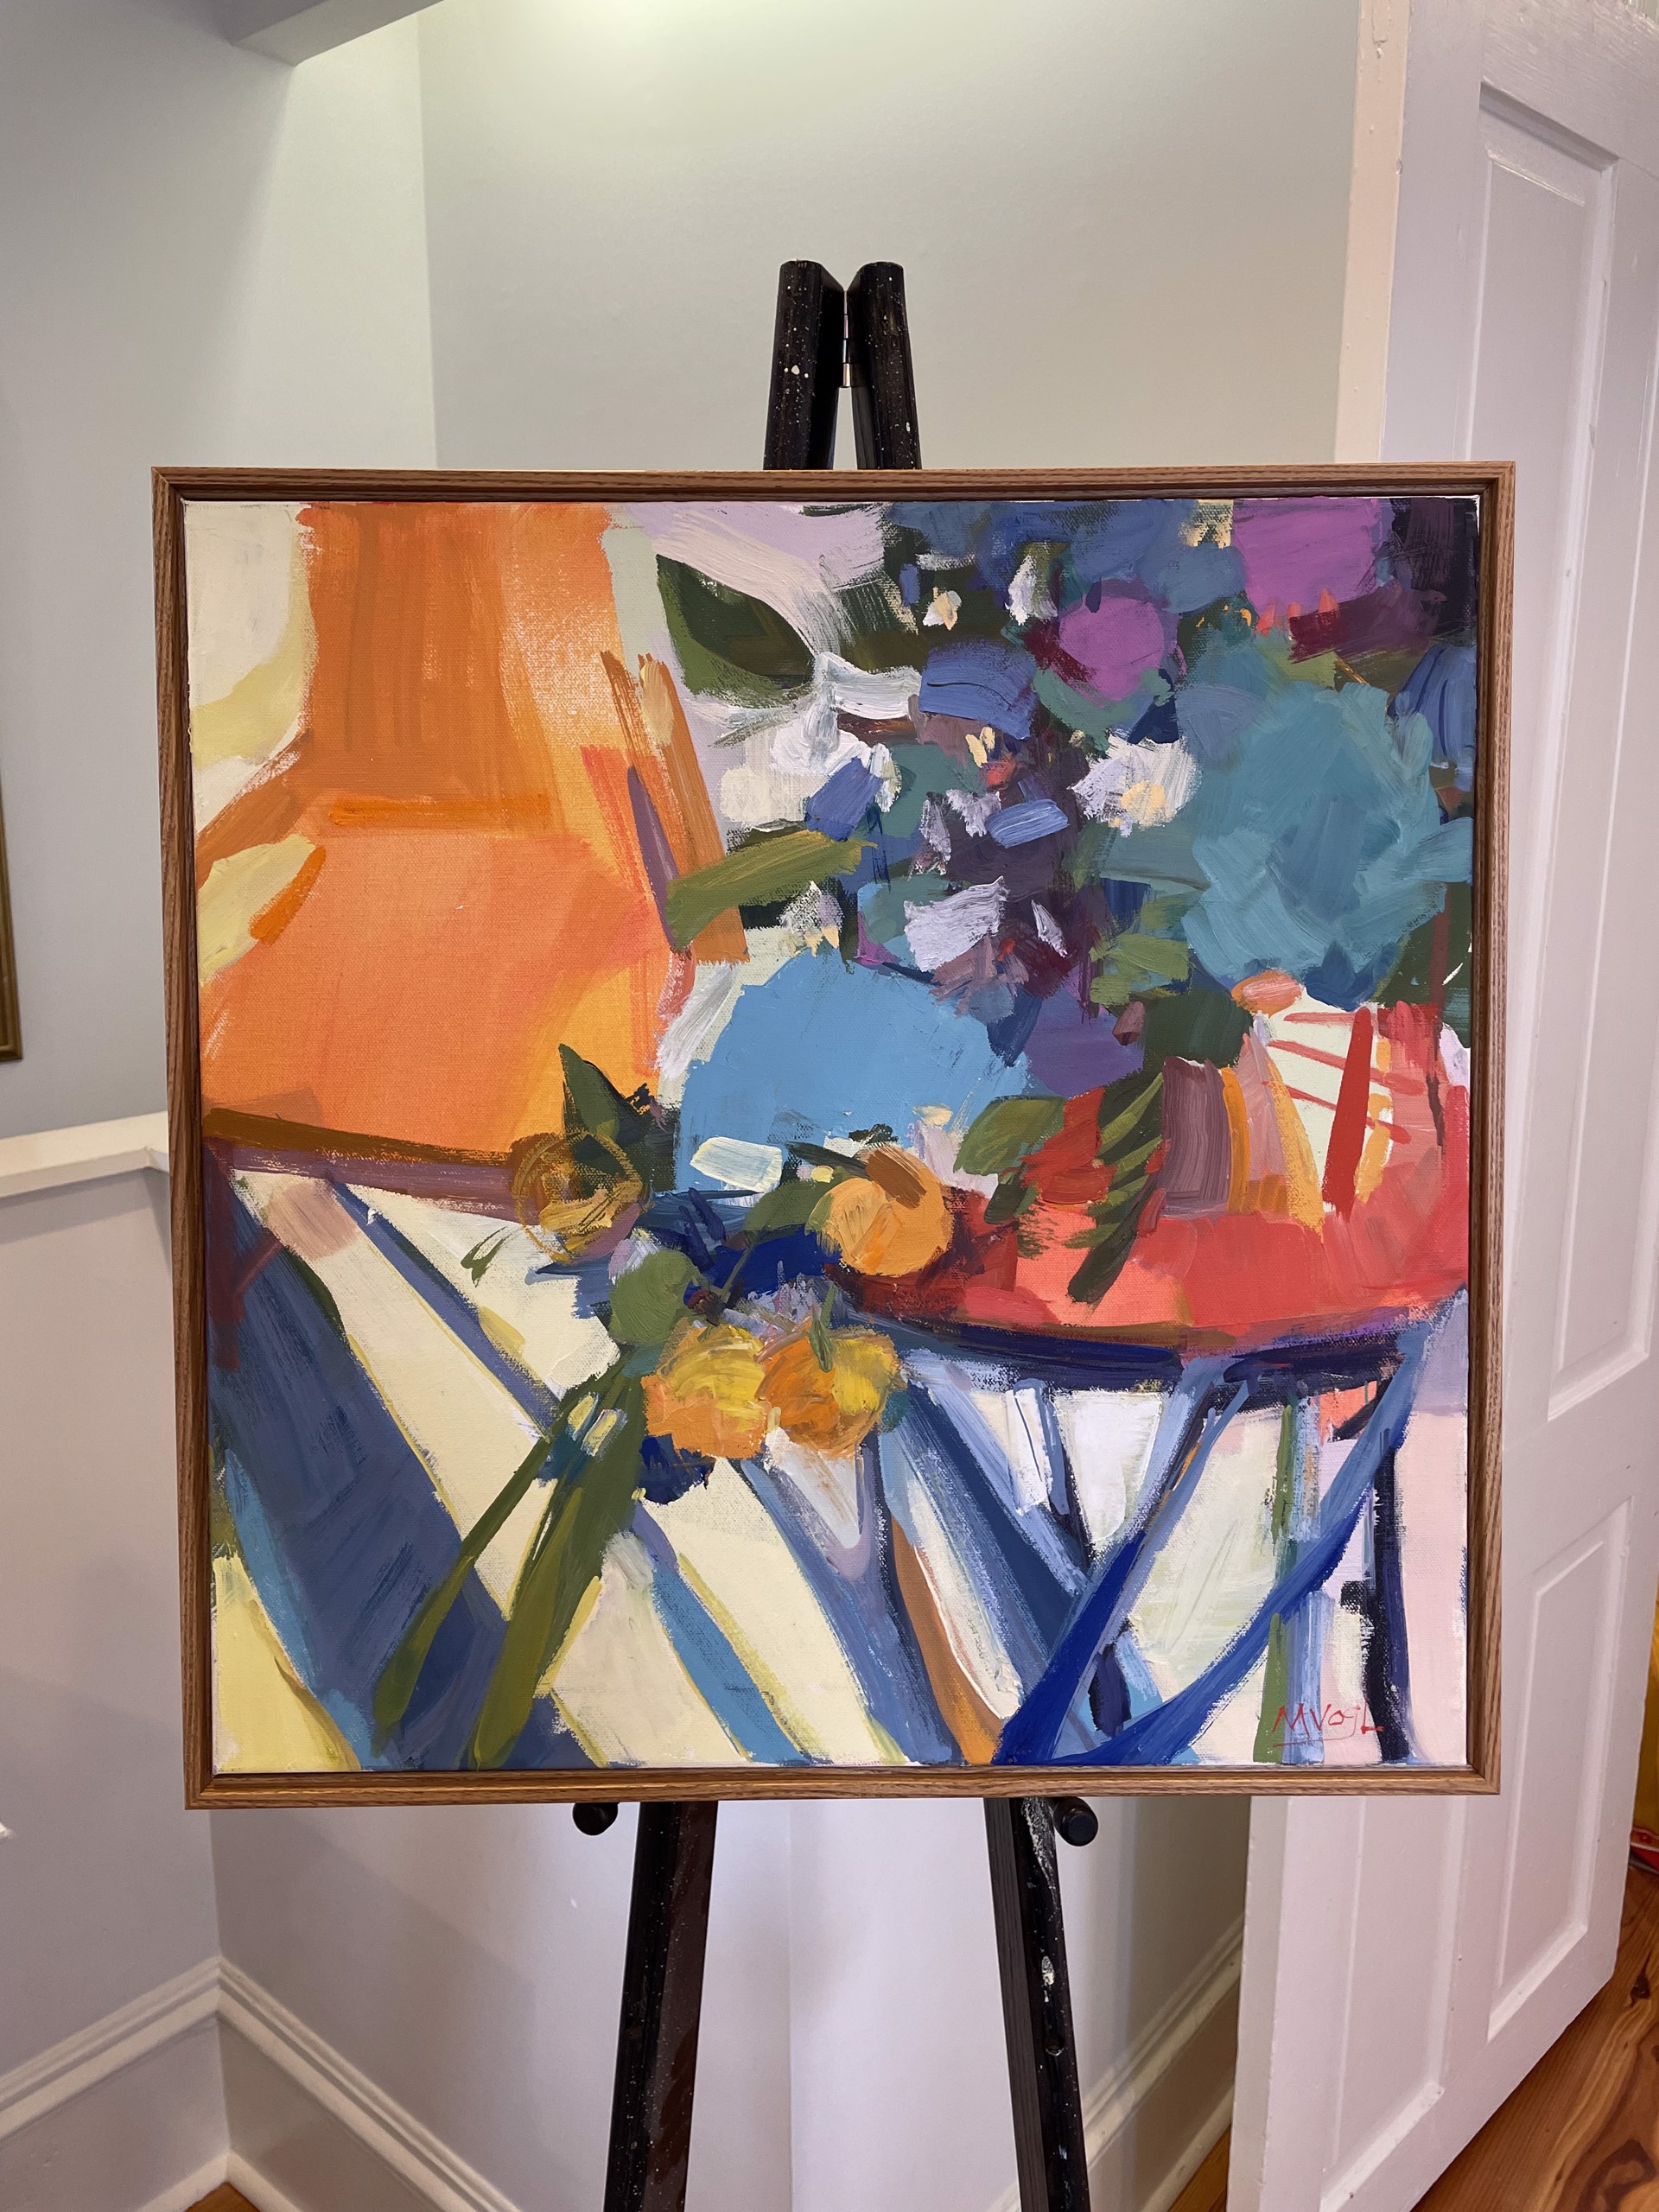 Orange Chair and Flowers by Marissa Vogl